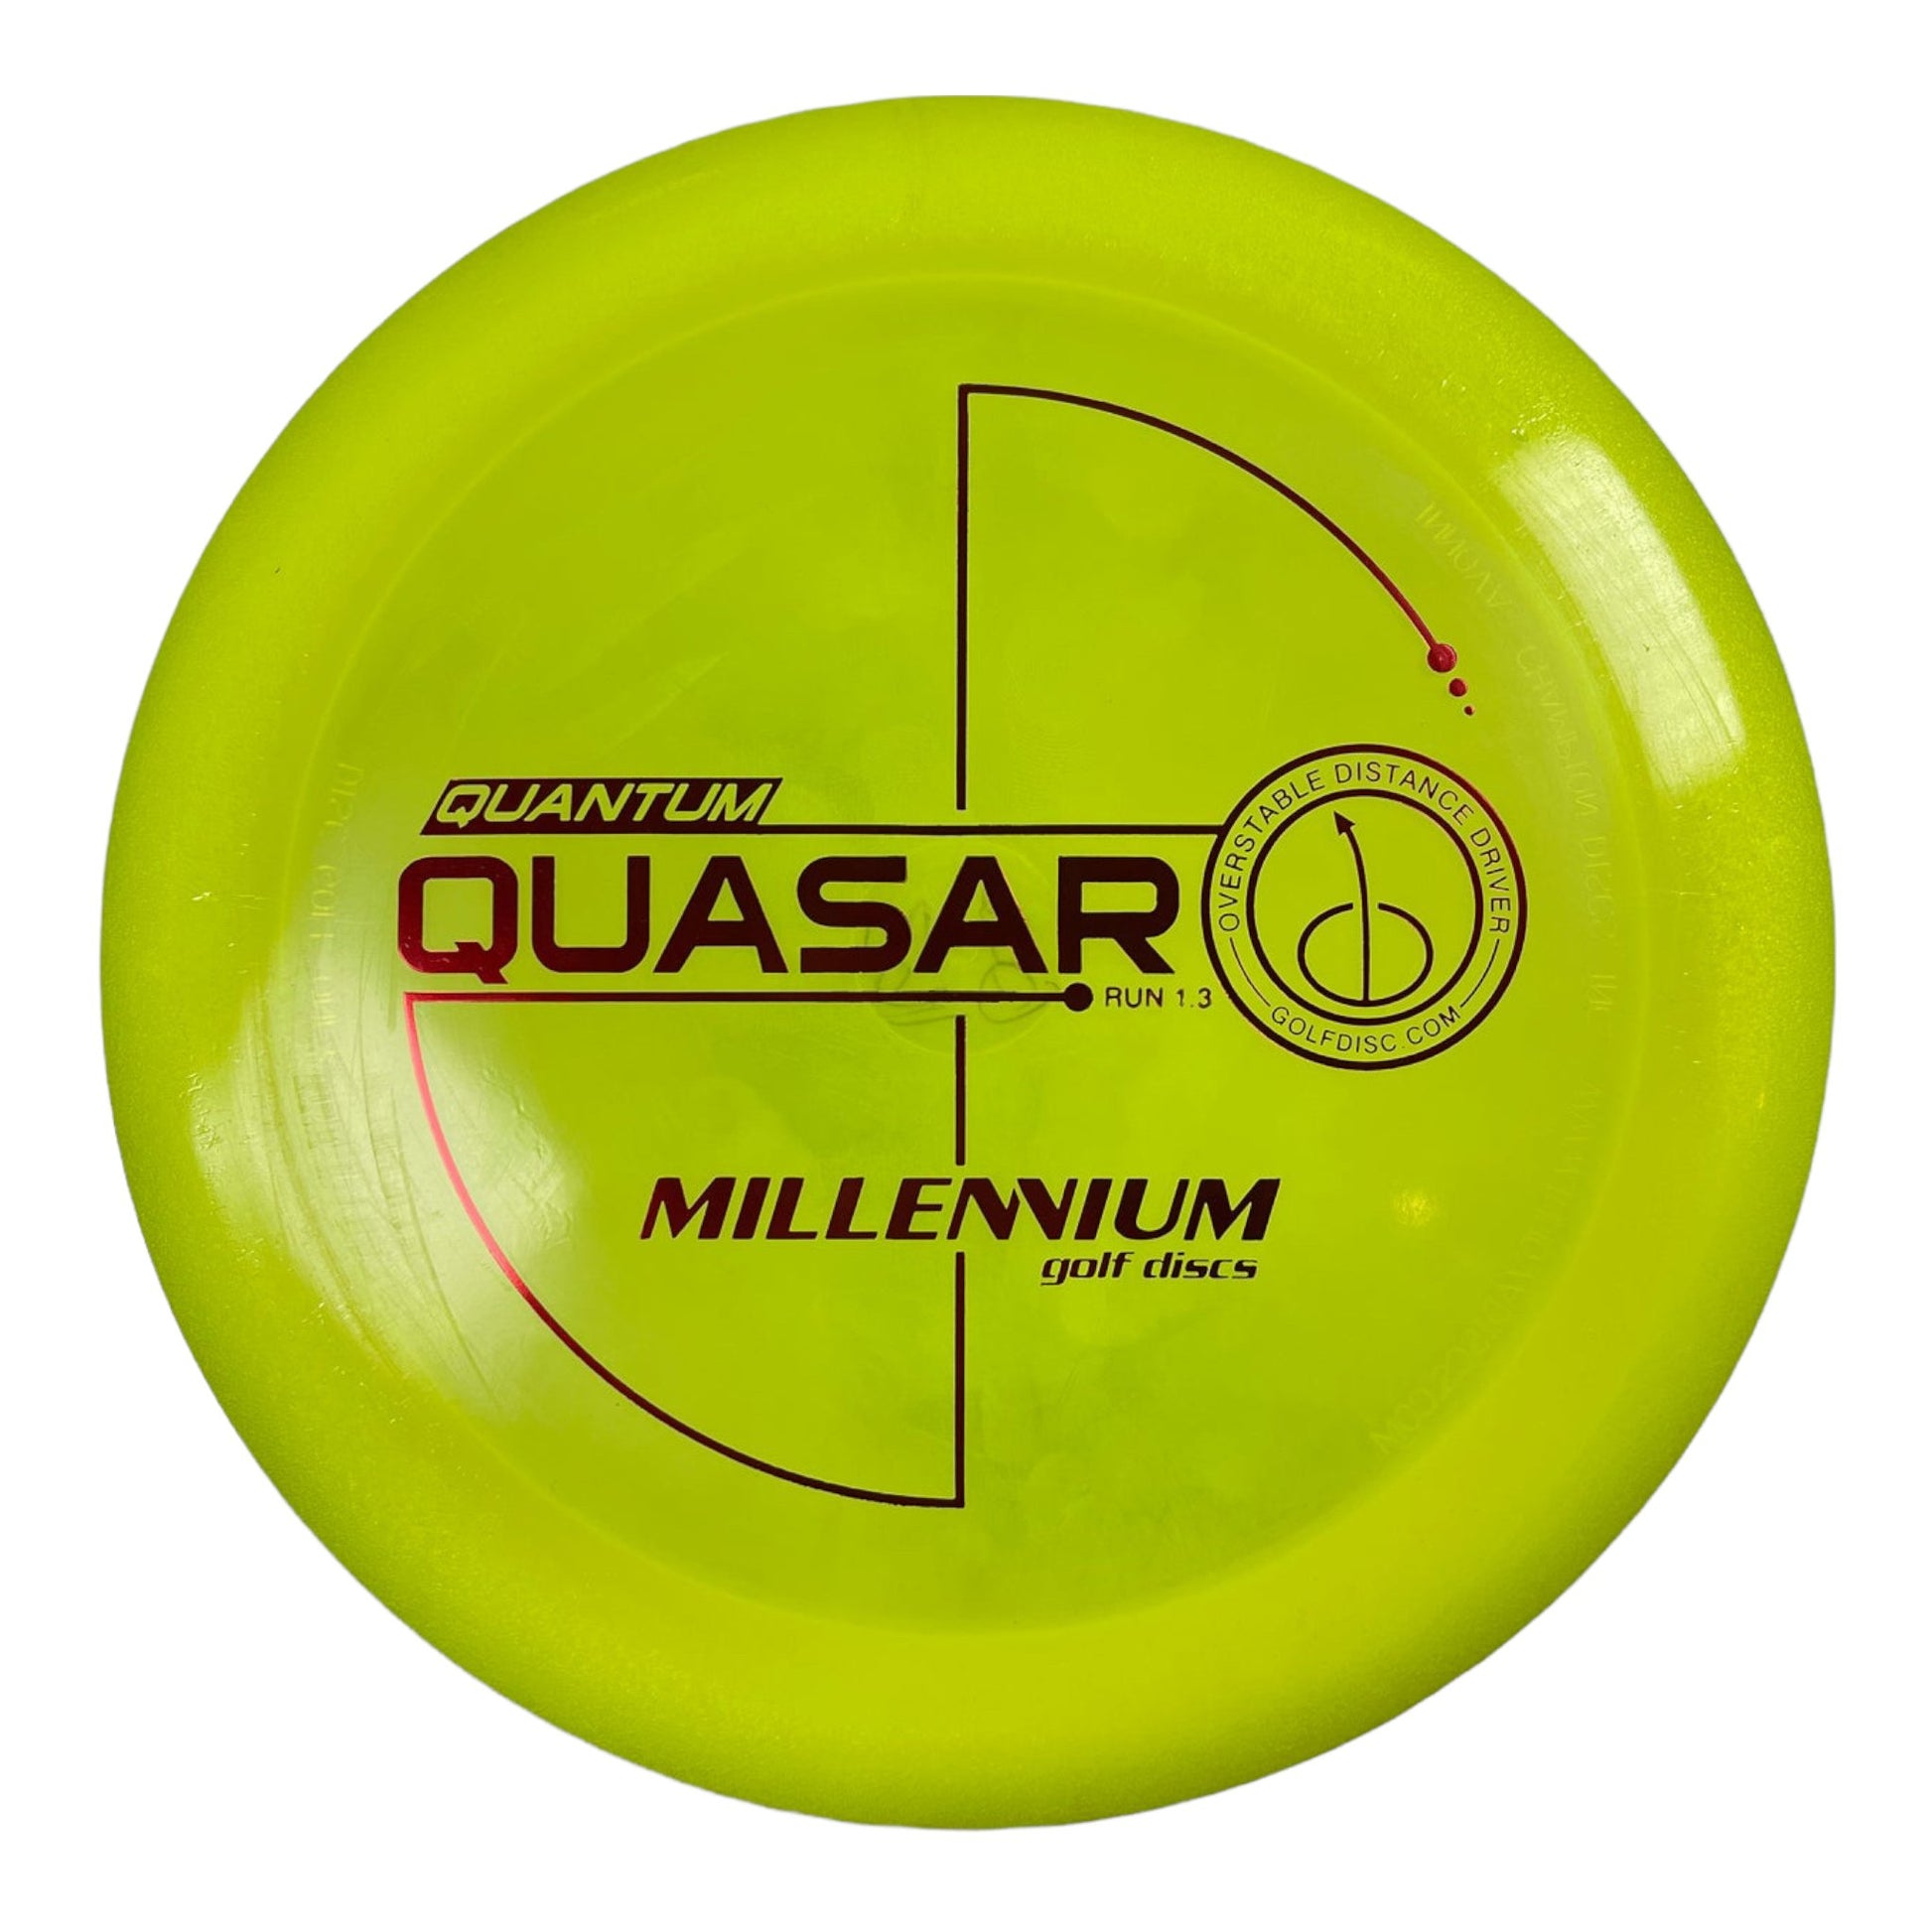 Millennium Golf Discs Quasar | Quantum | Yellow/Red 163g Disc Golf